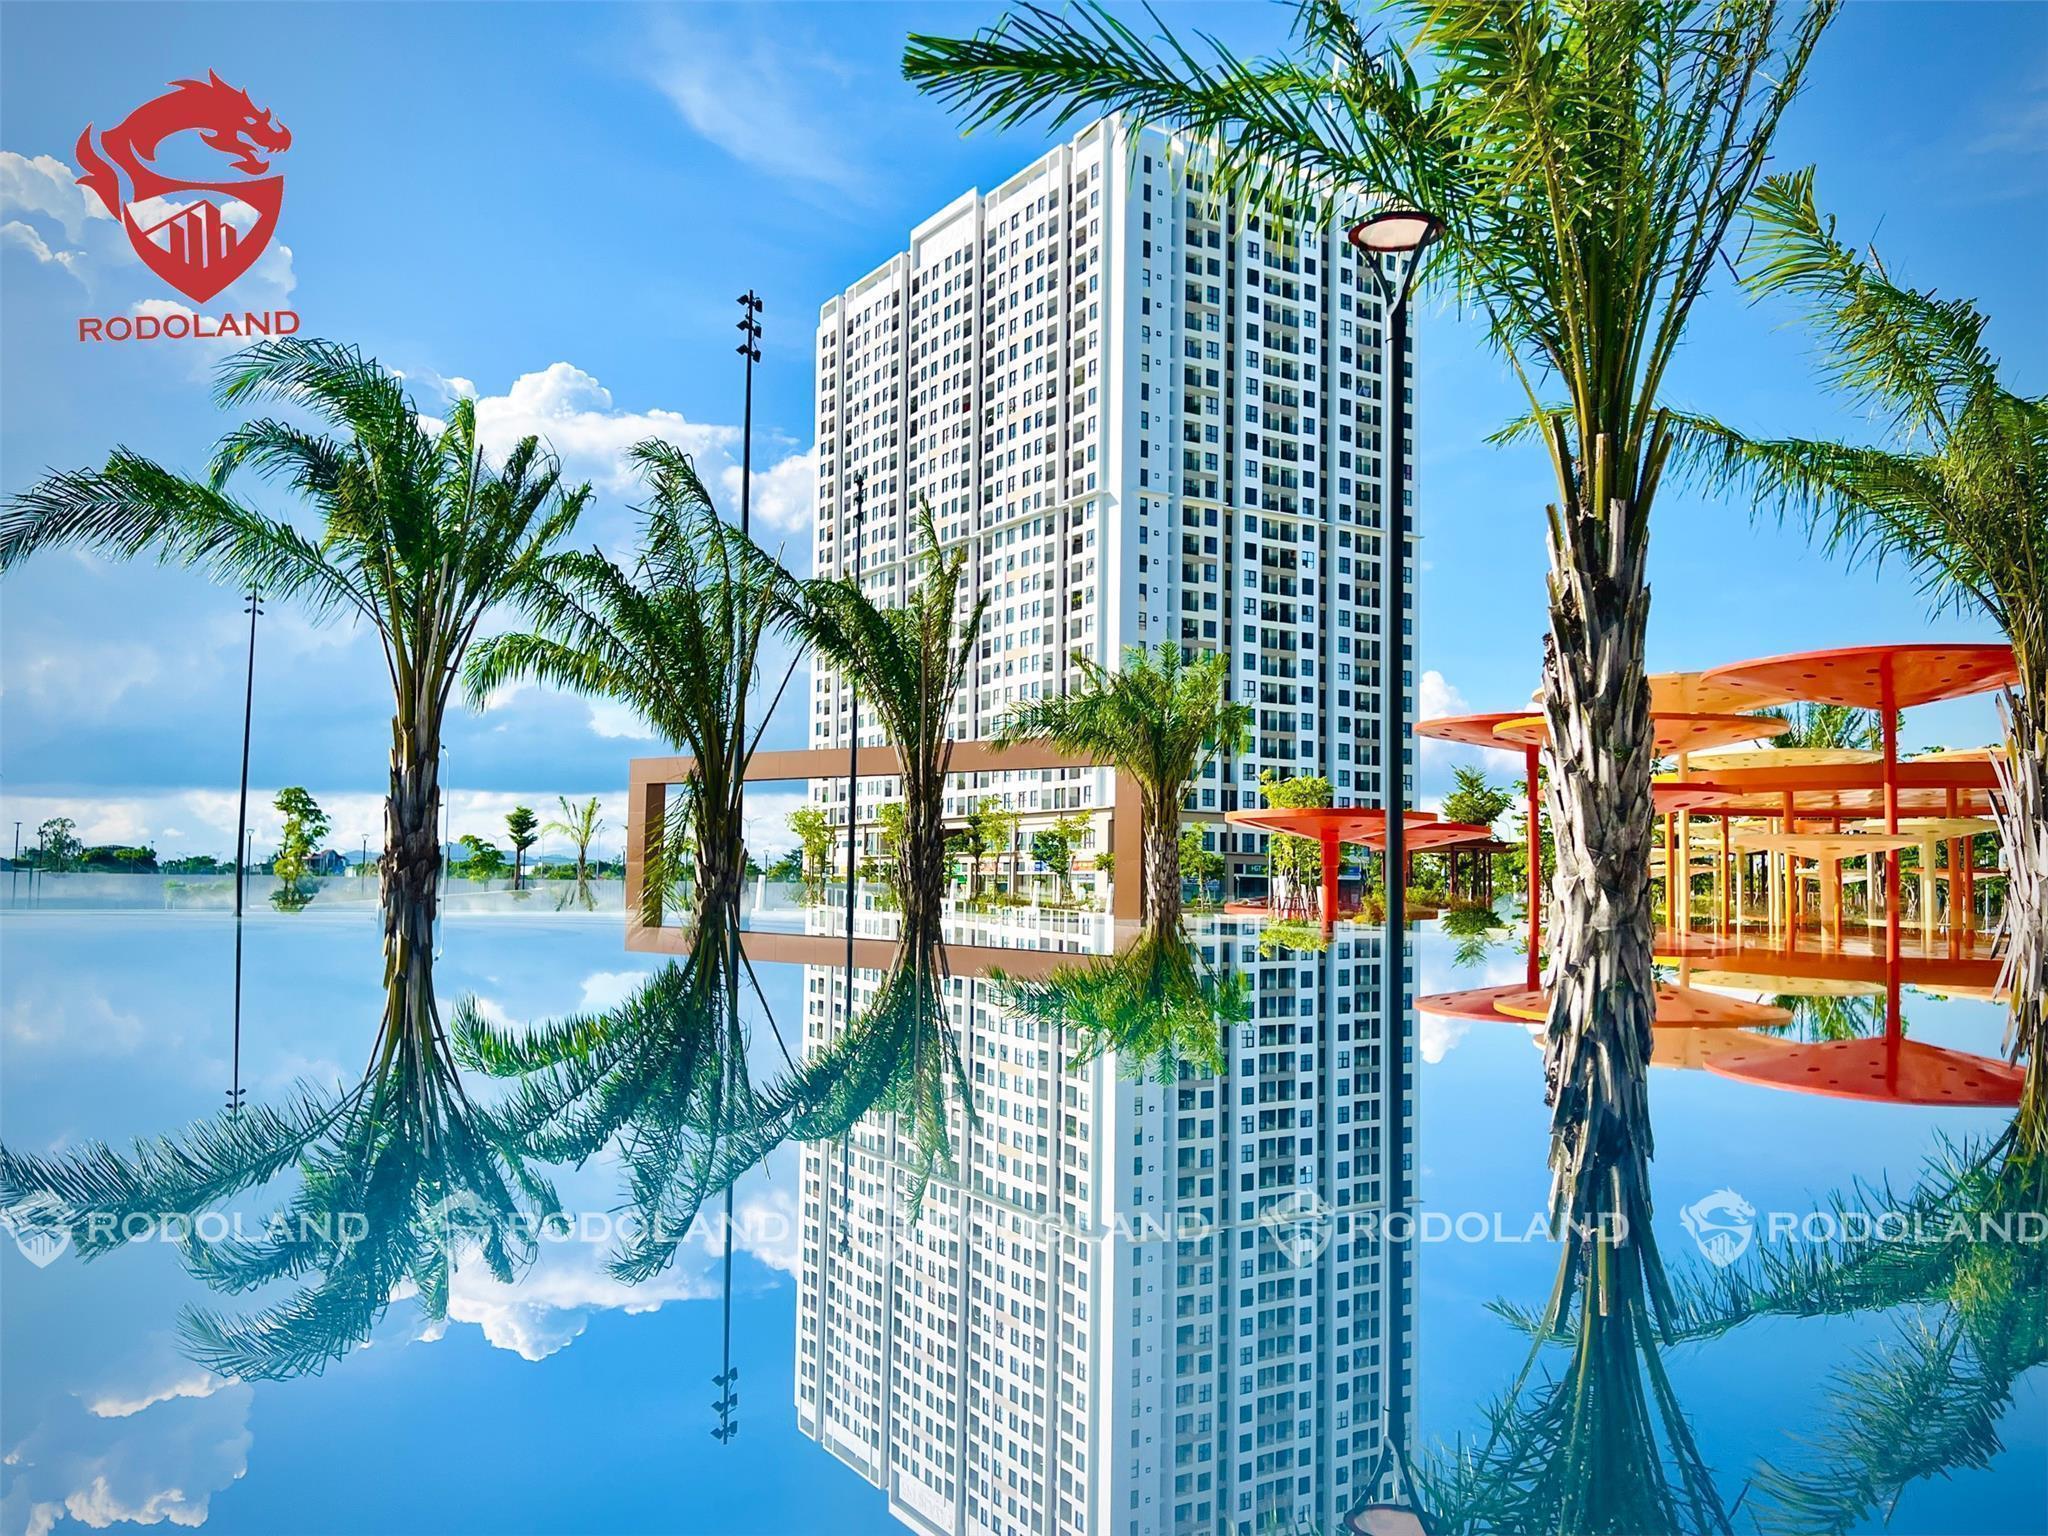 CHUYÊN FPT PLAZA: Cần mua căn hộ FPT Plaza 1 & 2 Đà Nẵng – Hãy gọi BĐS Rồng Đỏ 0905.31.89.88 2